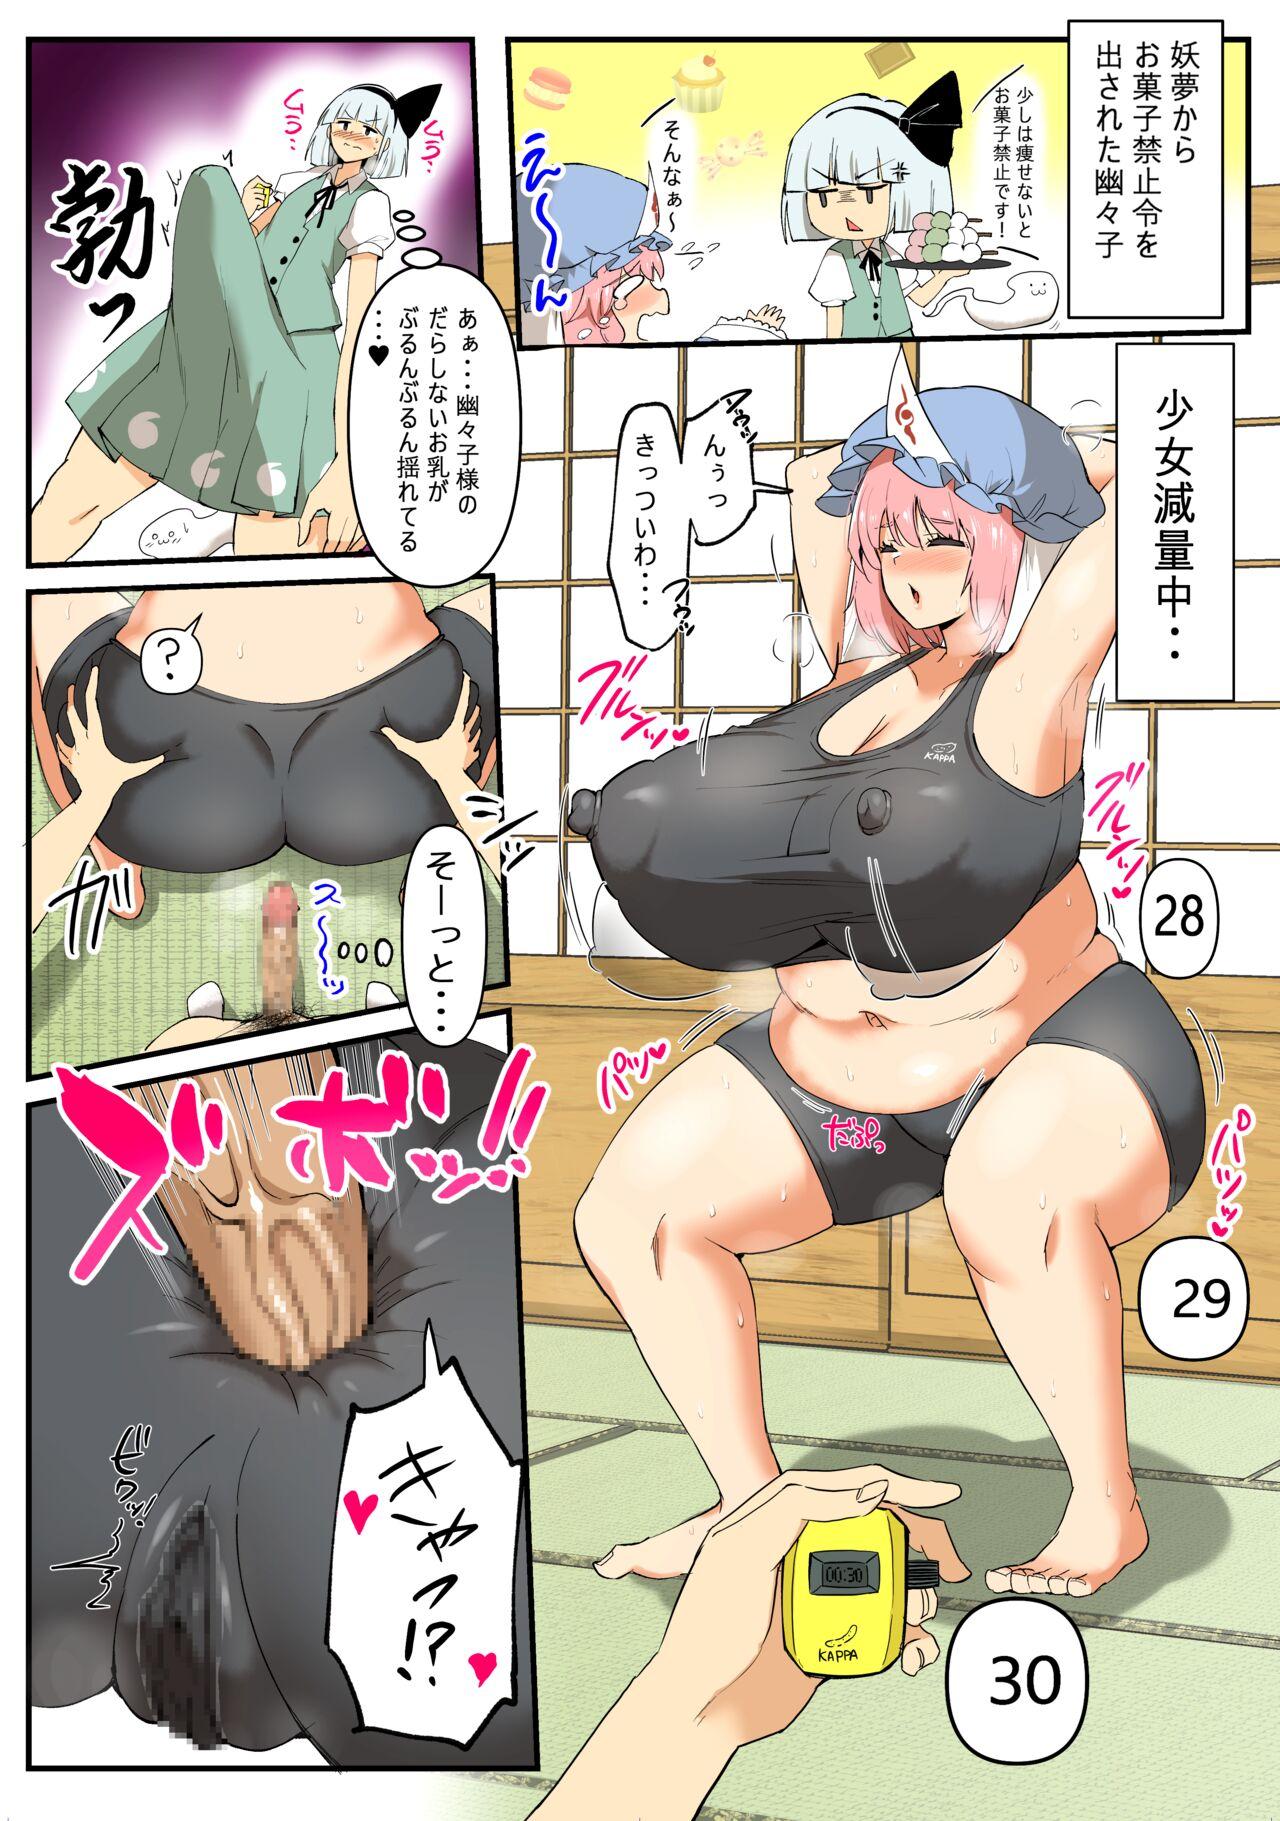 Stunning Yuyuko-sama no Diet Sex Manga - Touhou project Classroom - Page 1